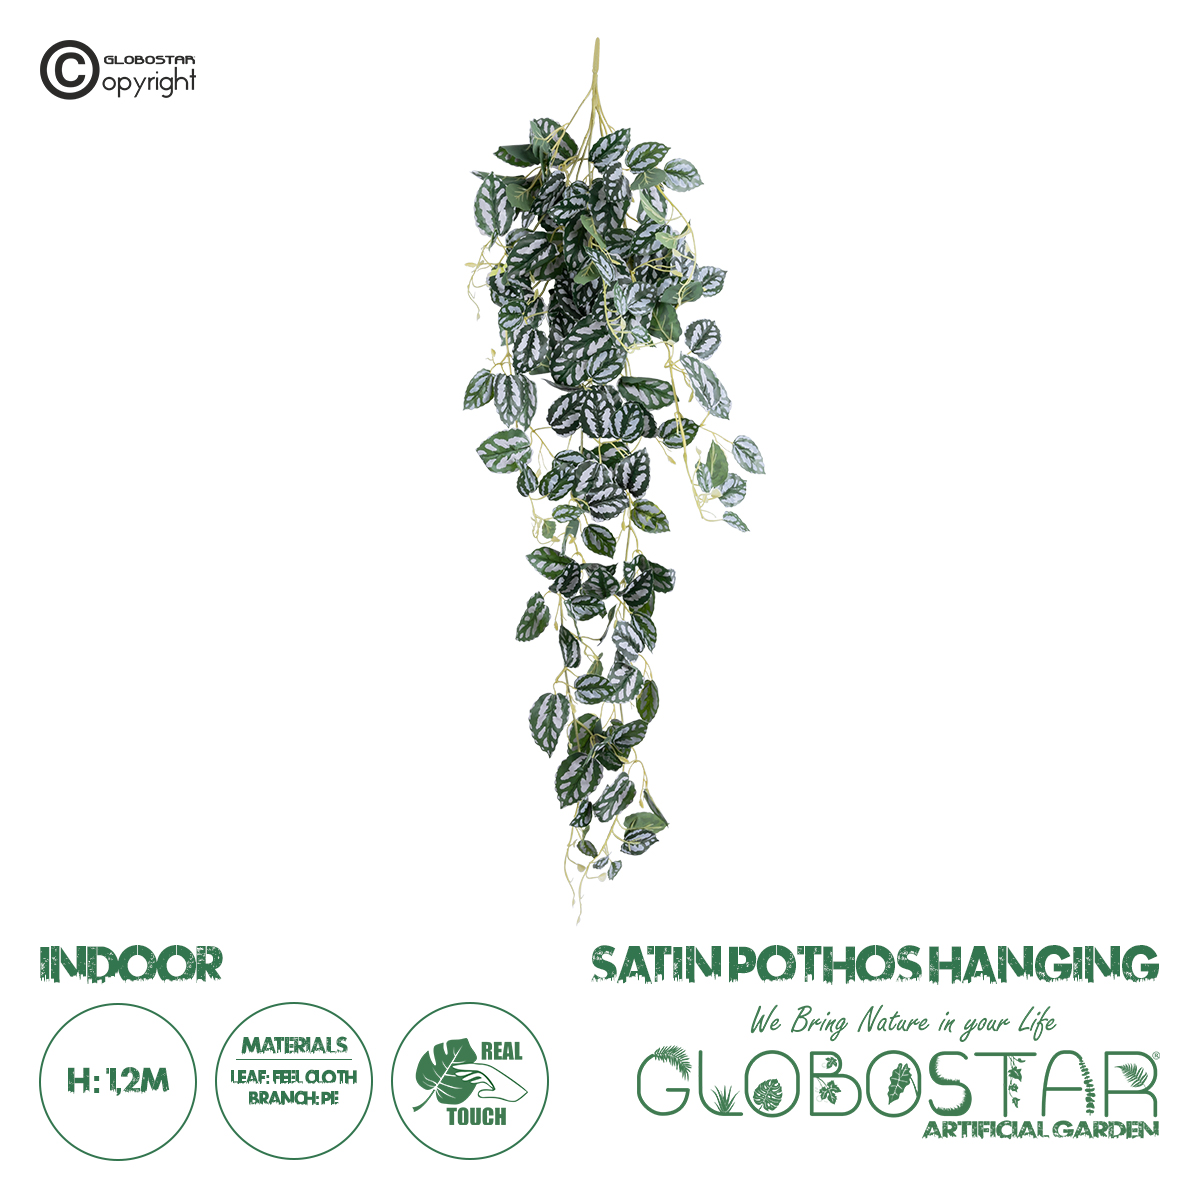 GloboStar® Artificial Garden SATIN POTHOS HANGING BRANCH 20242 Τεχνητό Διακοσμητικό Κρεμαστό Φυτό Ασημένια Άμπελός – Πόθος Υ120cm